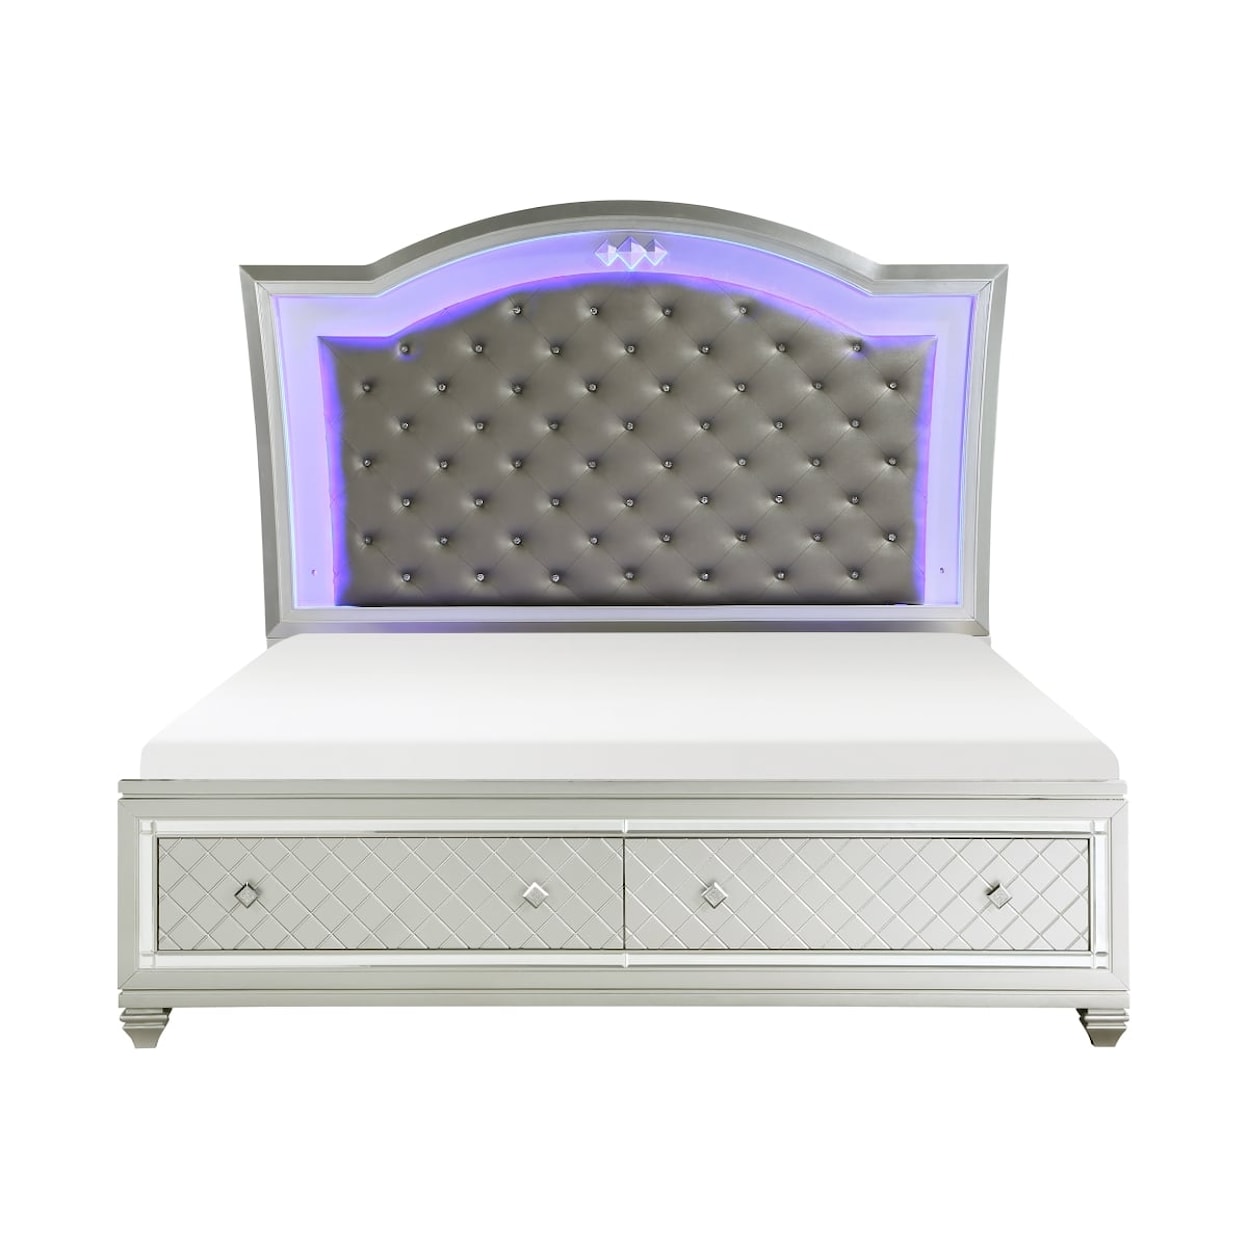 Homelegance Furniture Leesa King  Bed with FB Storage